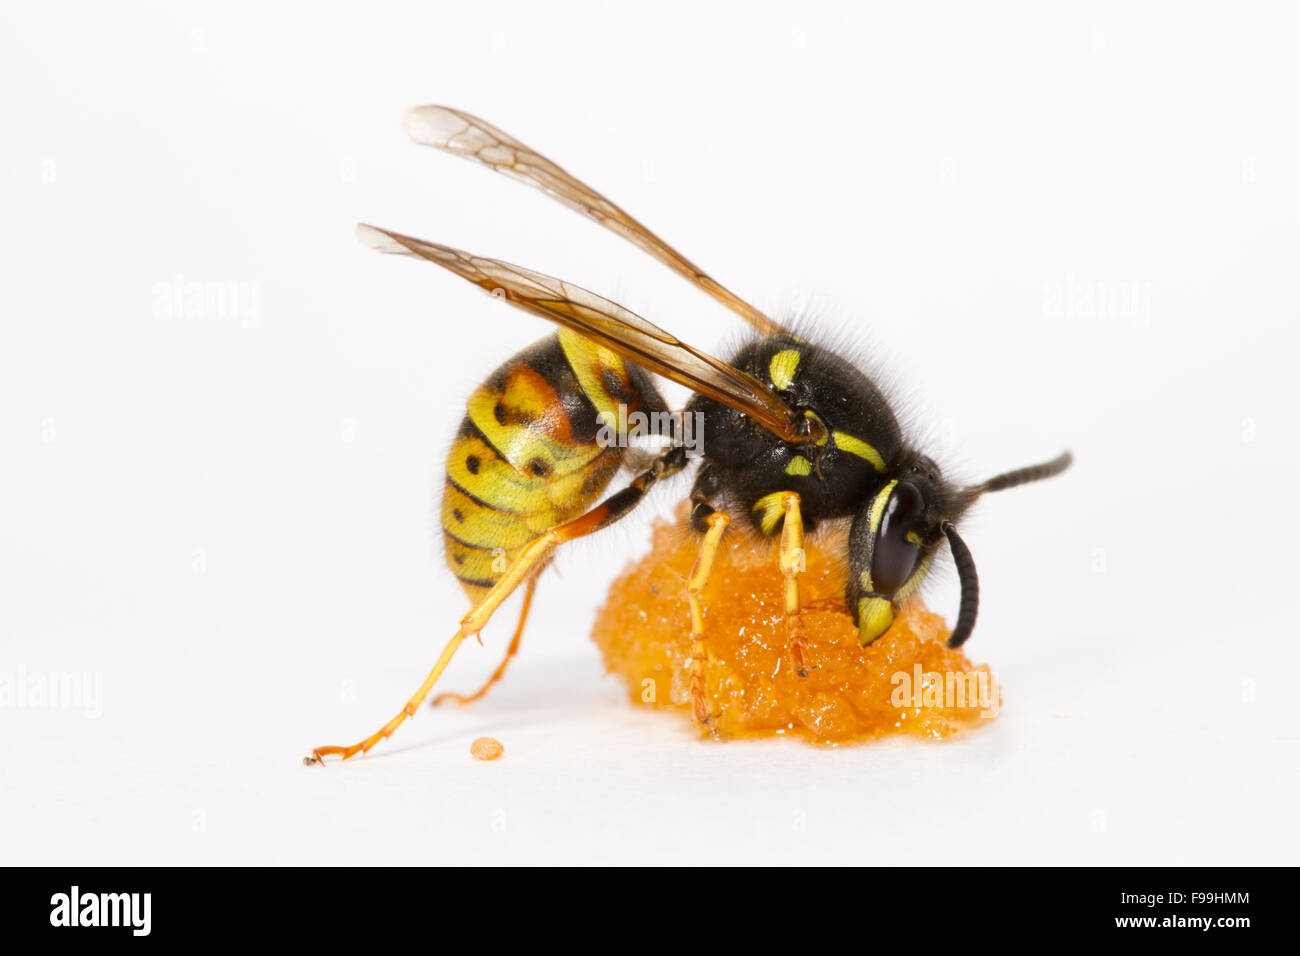 Red Wasp (Vespula rufa) adulto lavoratore avanzamento sul miele contro uno sfondo bianco. Powys, Galles, Agosto. Foto Stock